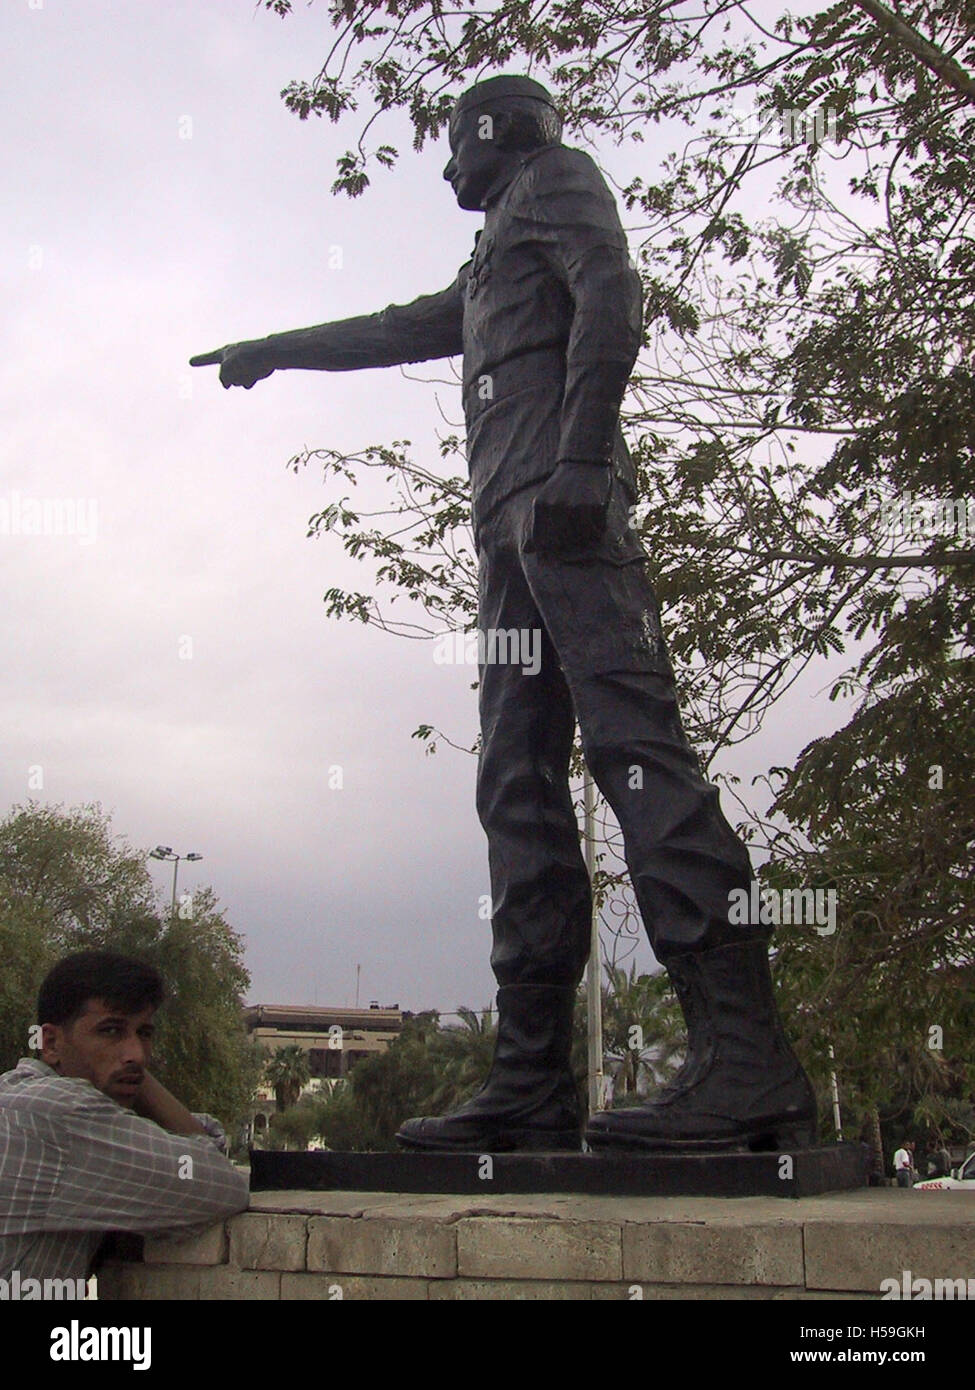 12 avril 2003 L'un des 99 statues de généraux irakiens et les commandants, chacune pointant vers l'Iran sur la banque du Chatt al-Arab, à Bassorah, en Irak. Banque D'Images